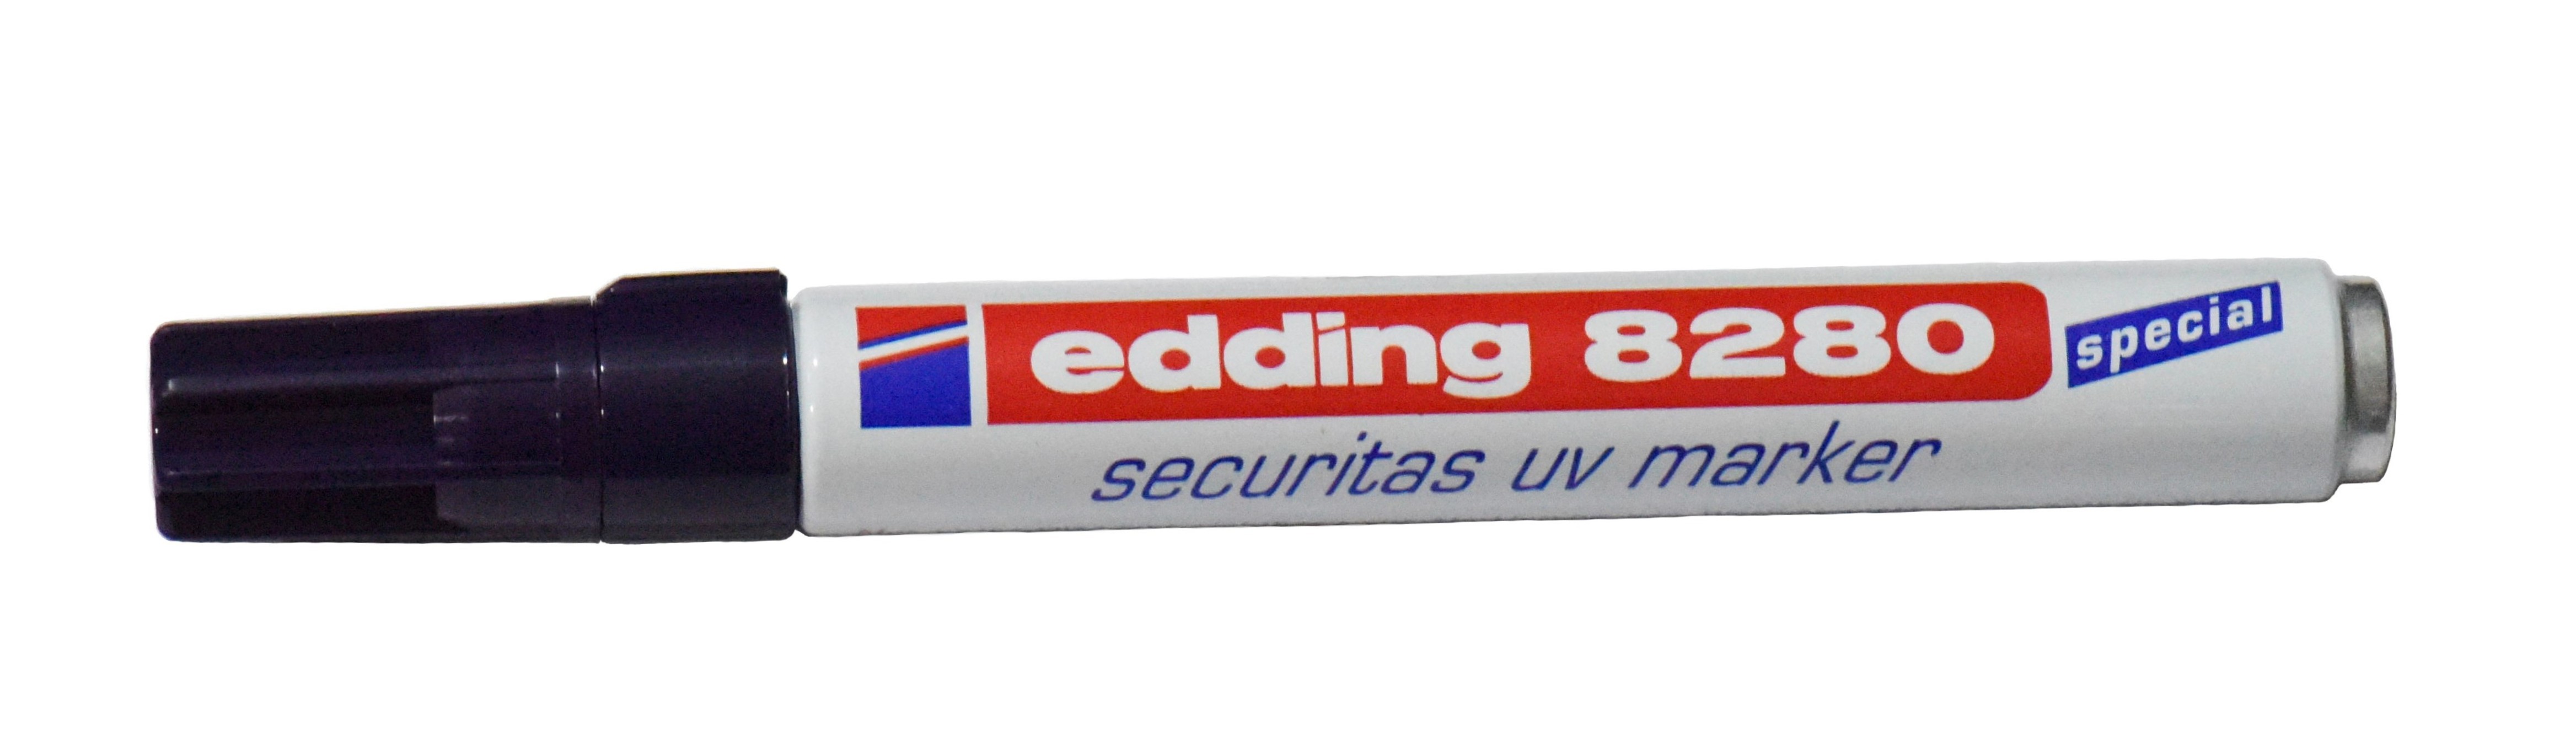 Маркер восковой. Edding 8280. Маркер промышленный синий e-3000 Edding. Ультрафиолетовый маркер по металлу. Химический маркер.